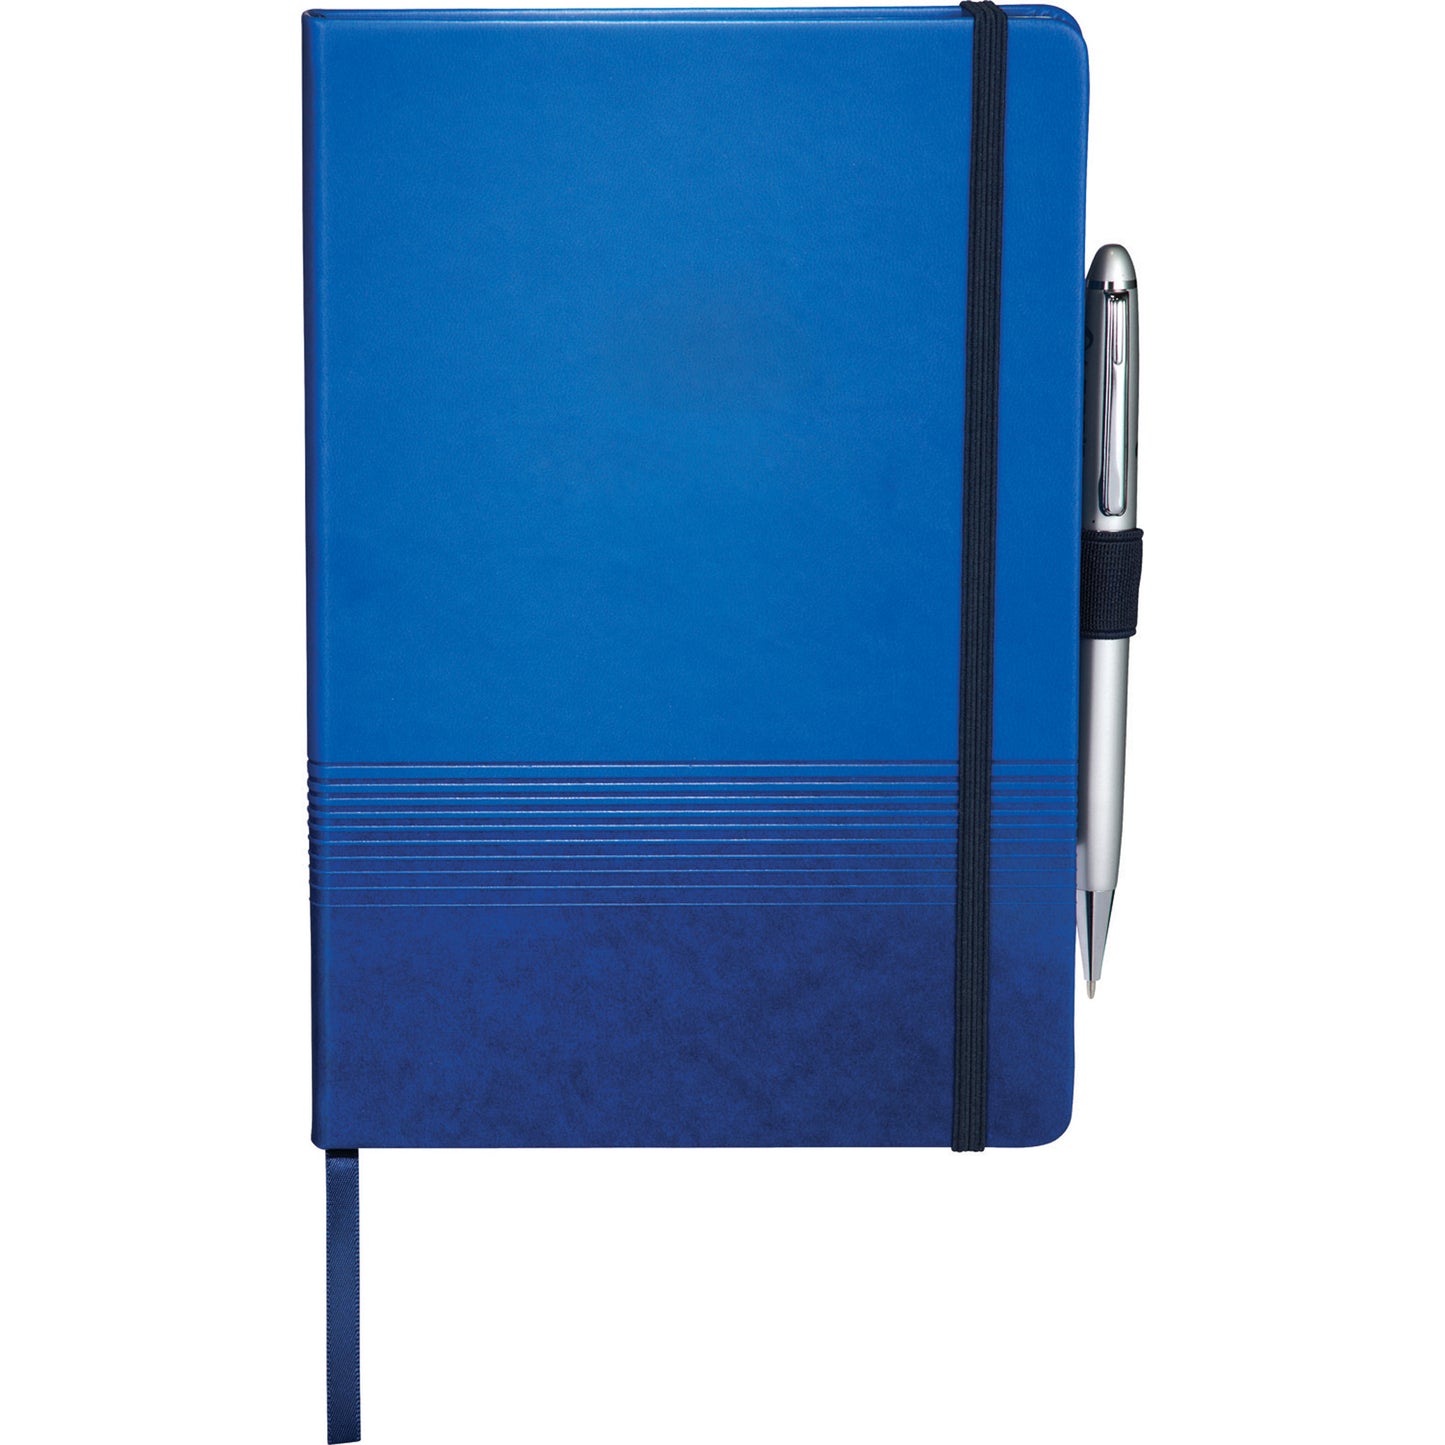 Pedova™ Fusion Bound JournalBook™